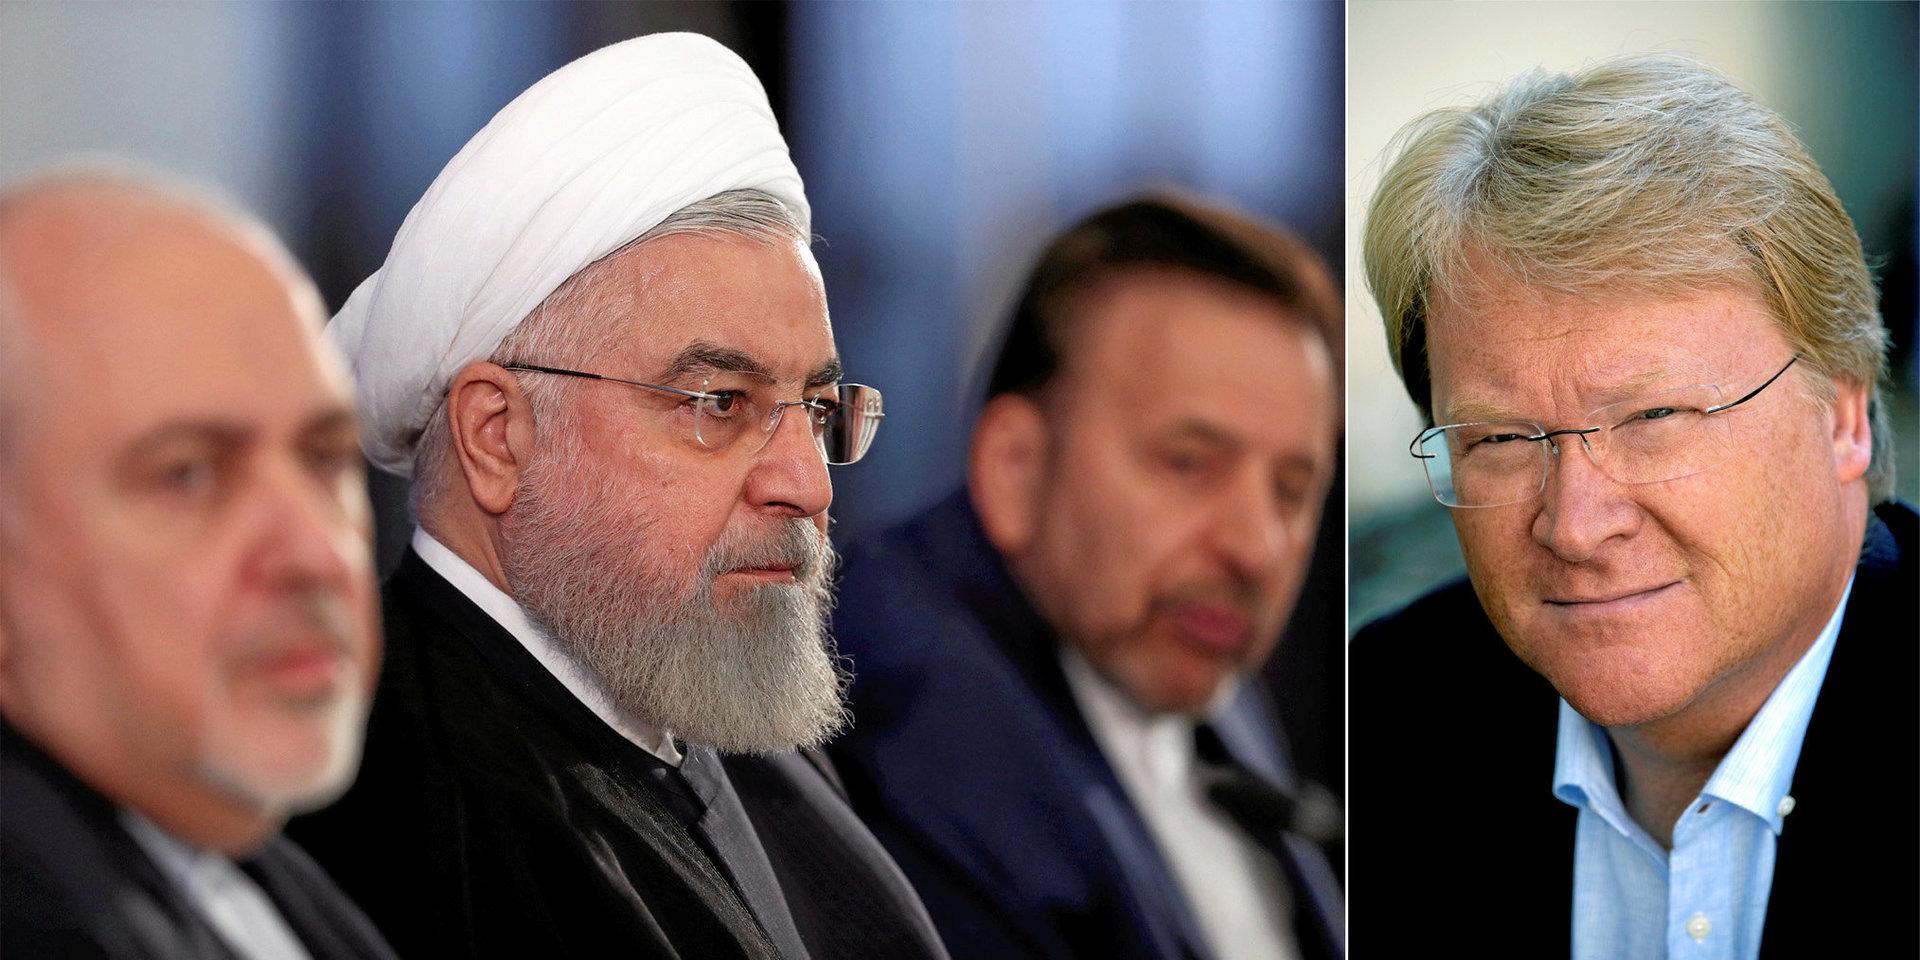 Den regim som den iranske utrikesministern hänfört tjänar är en av världens värsta och mest hårdföra diktaturer, i sig det allvarligaste hotet mot säkerhet och fred i Mellanöstern, skriver Lars Adaktusson (KD).